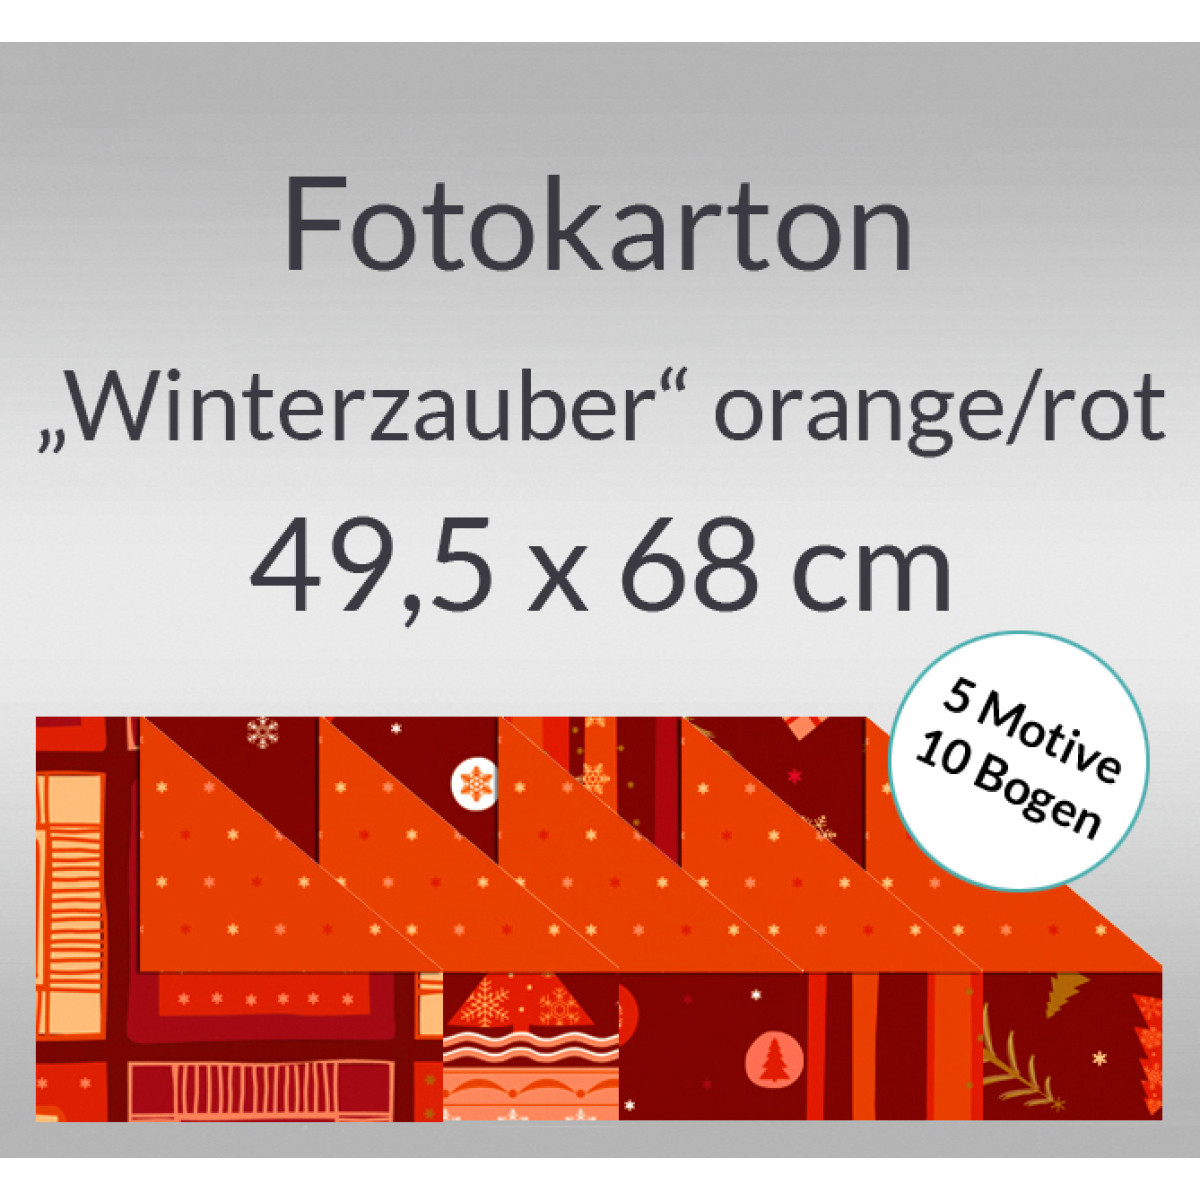 Fotokarton "Winterzauber" orange/rot 49,5 x 68 cm - 10 Bogen sortiert